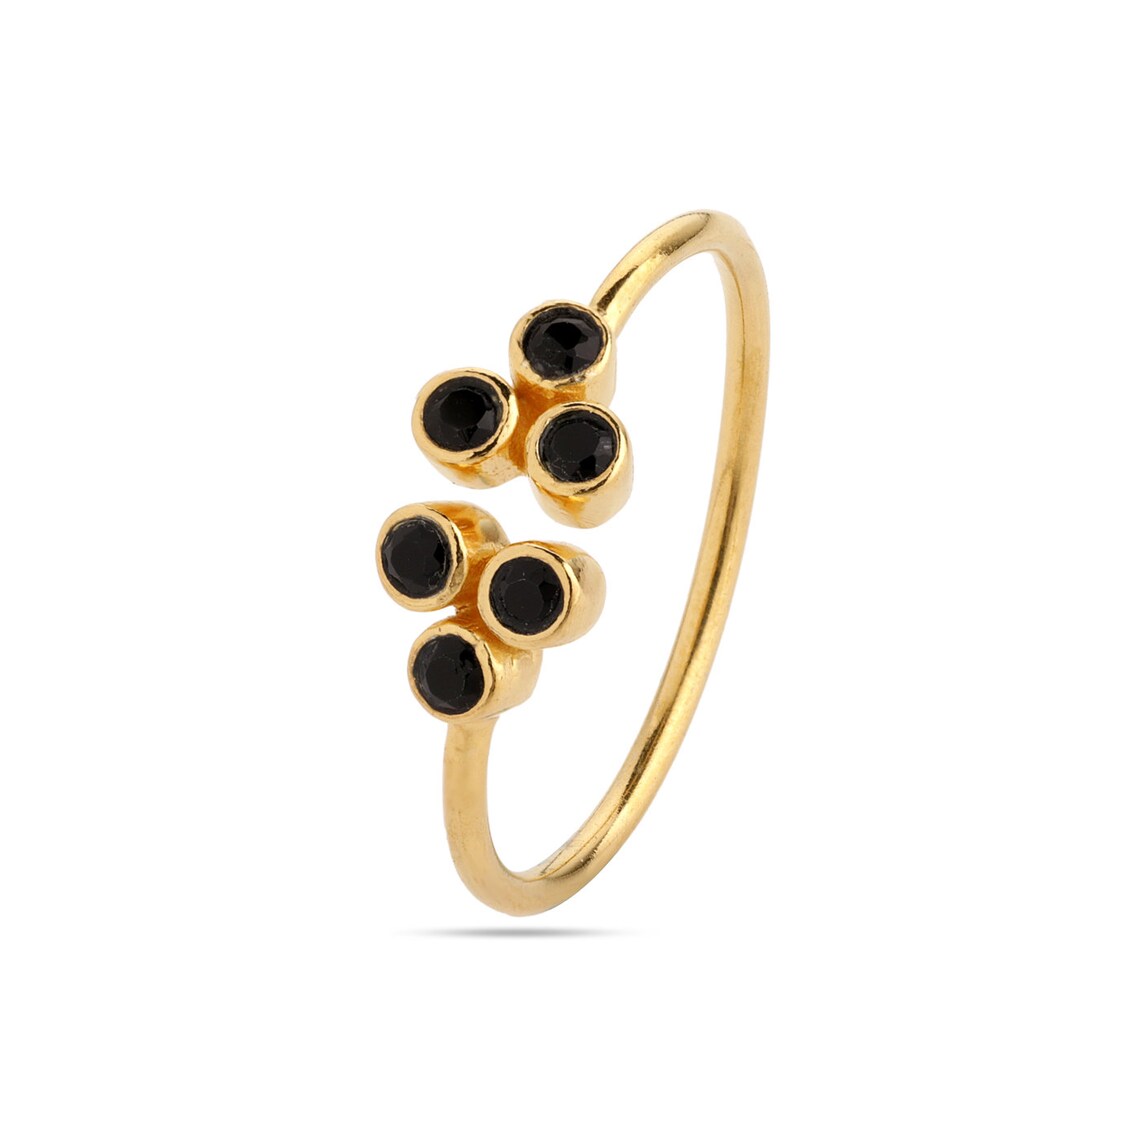 Black onyx open ring, Onyx black ring, Adjustable ring, tiny gemstone ring, Black gemstone ring, Black gemstone ring